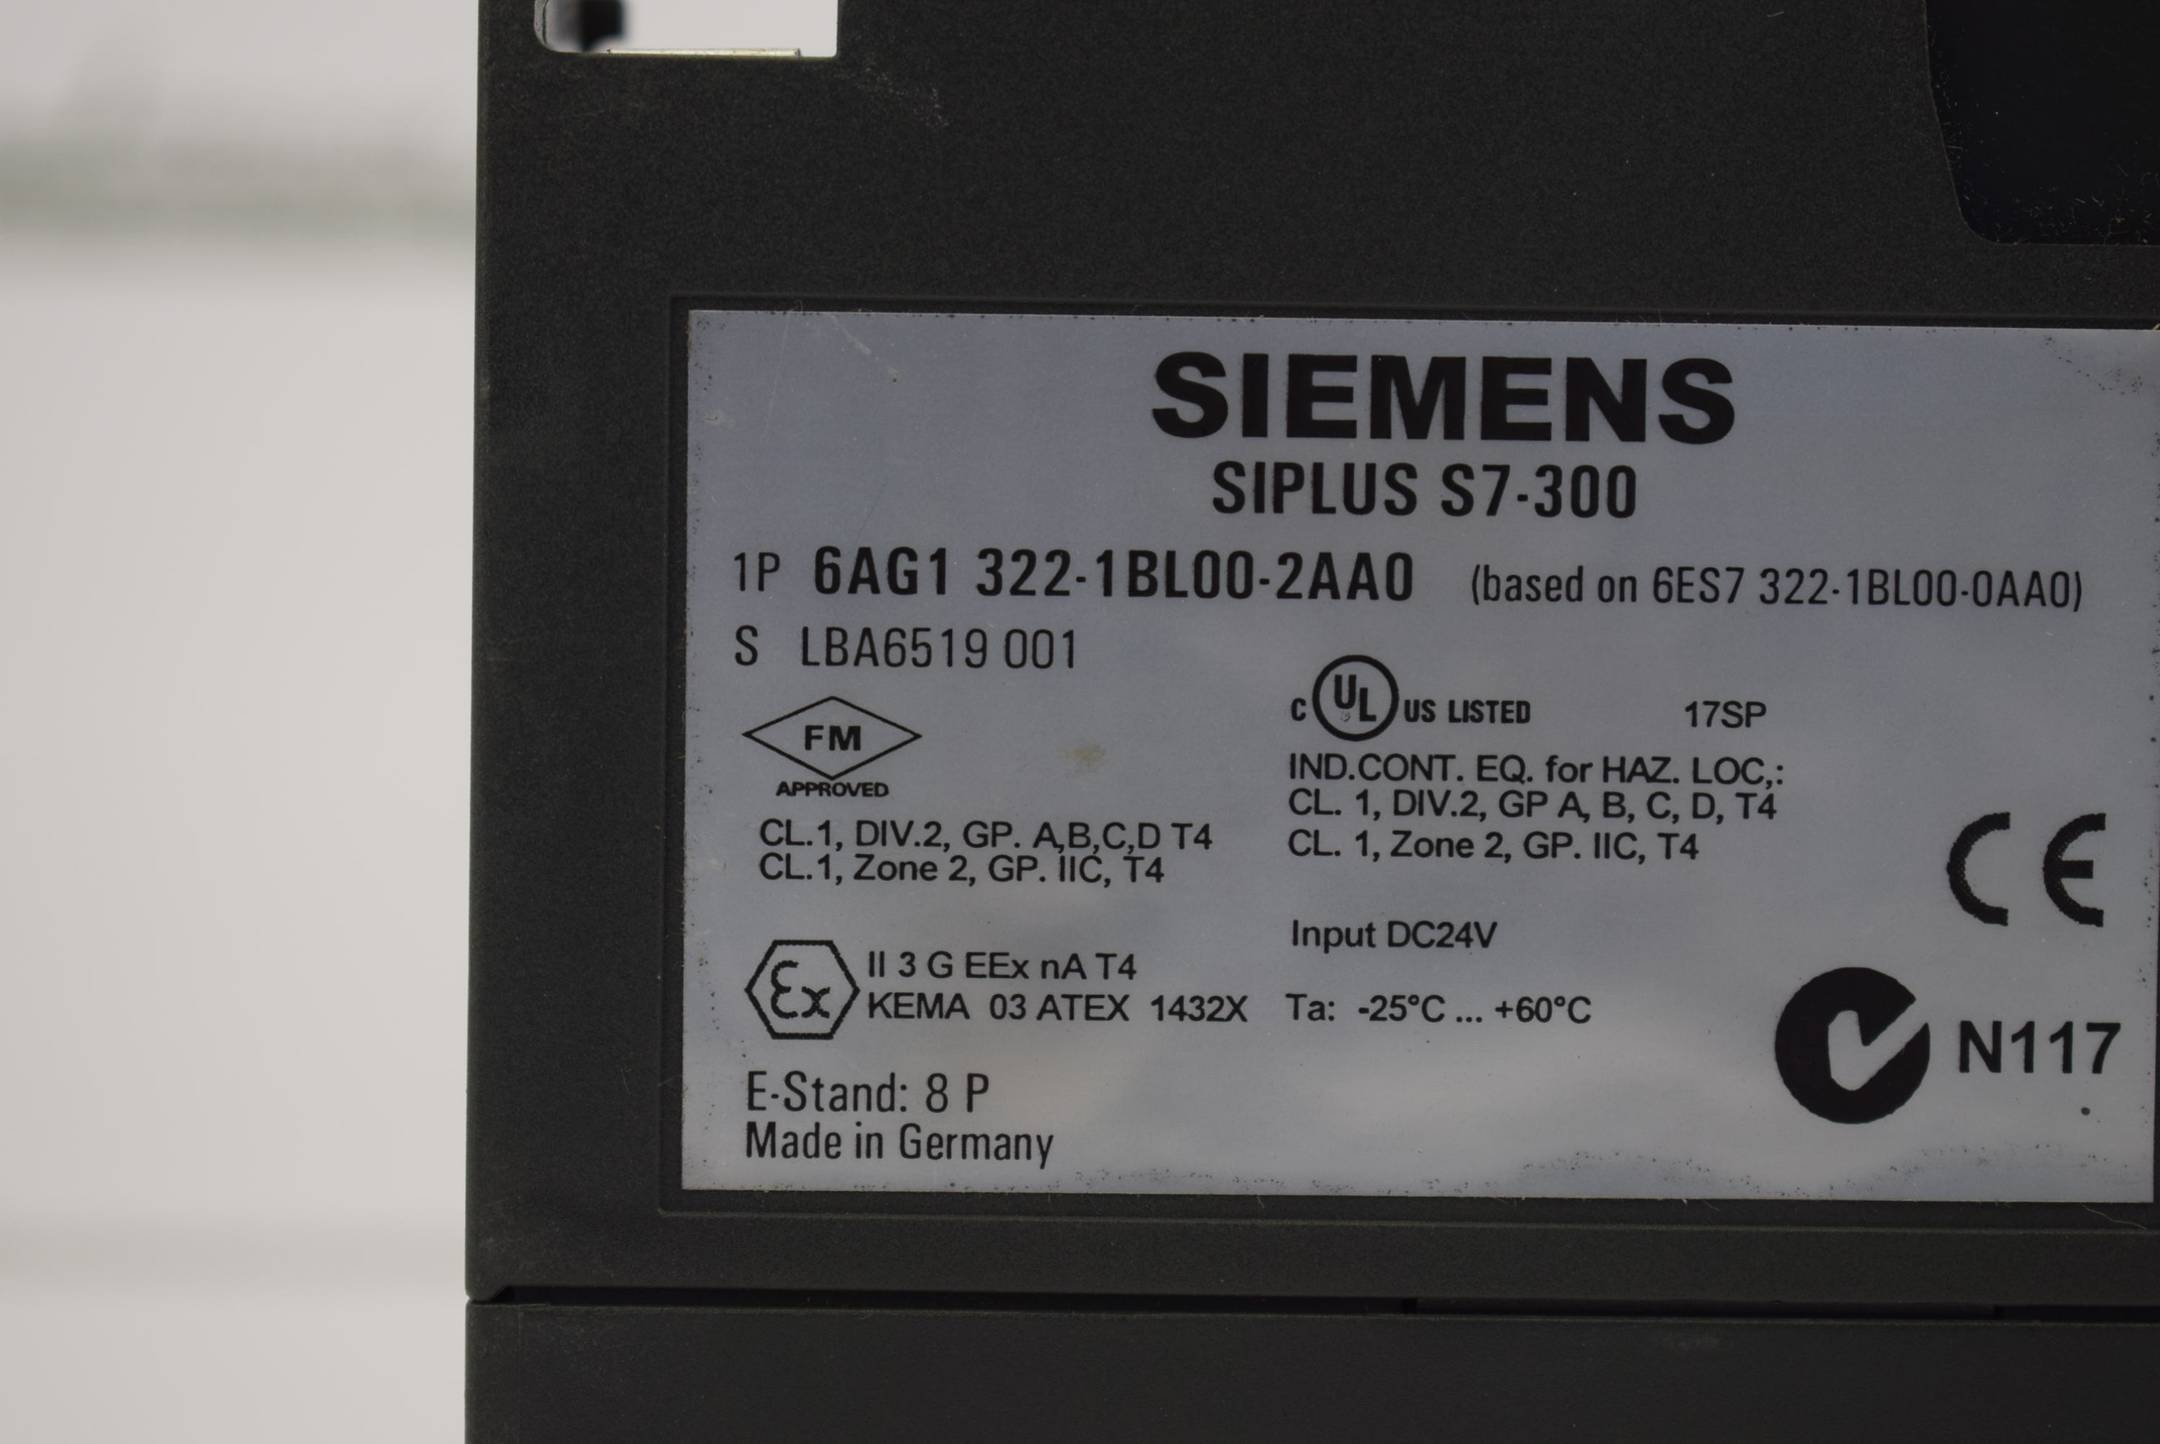 Siemens SIPLUS S7-300 SM 322 32DO-40-pol 6AG1322-1BL00-2AA0 ( 6AG1 322-1BL00-2AA0 ) E8P